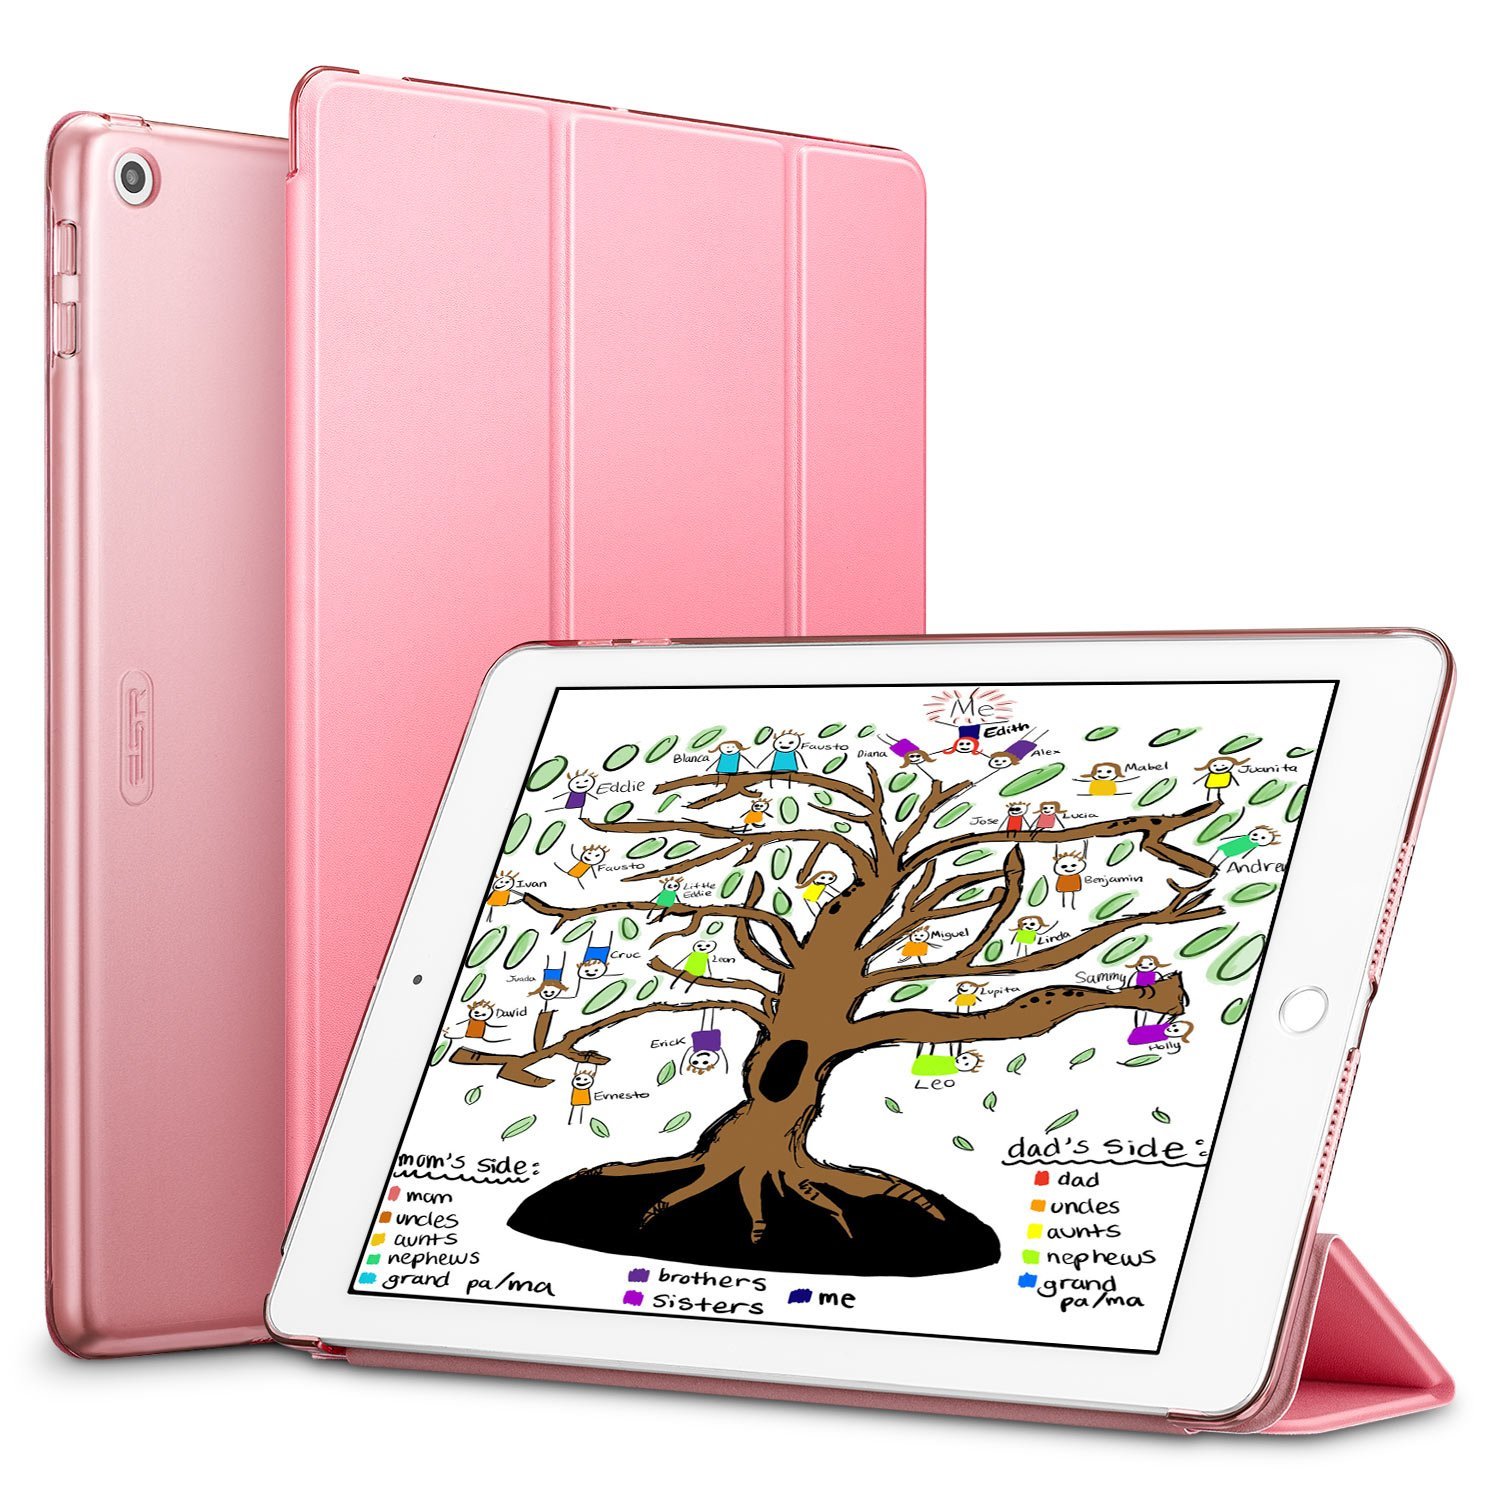 https://bonplanmobile.com/wp-content/uploads/2018/05/Coque-iPad-2018-Coque-iPad-2017-rose-pas-cher-promo-1.jpg